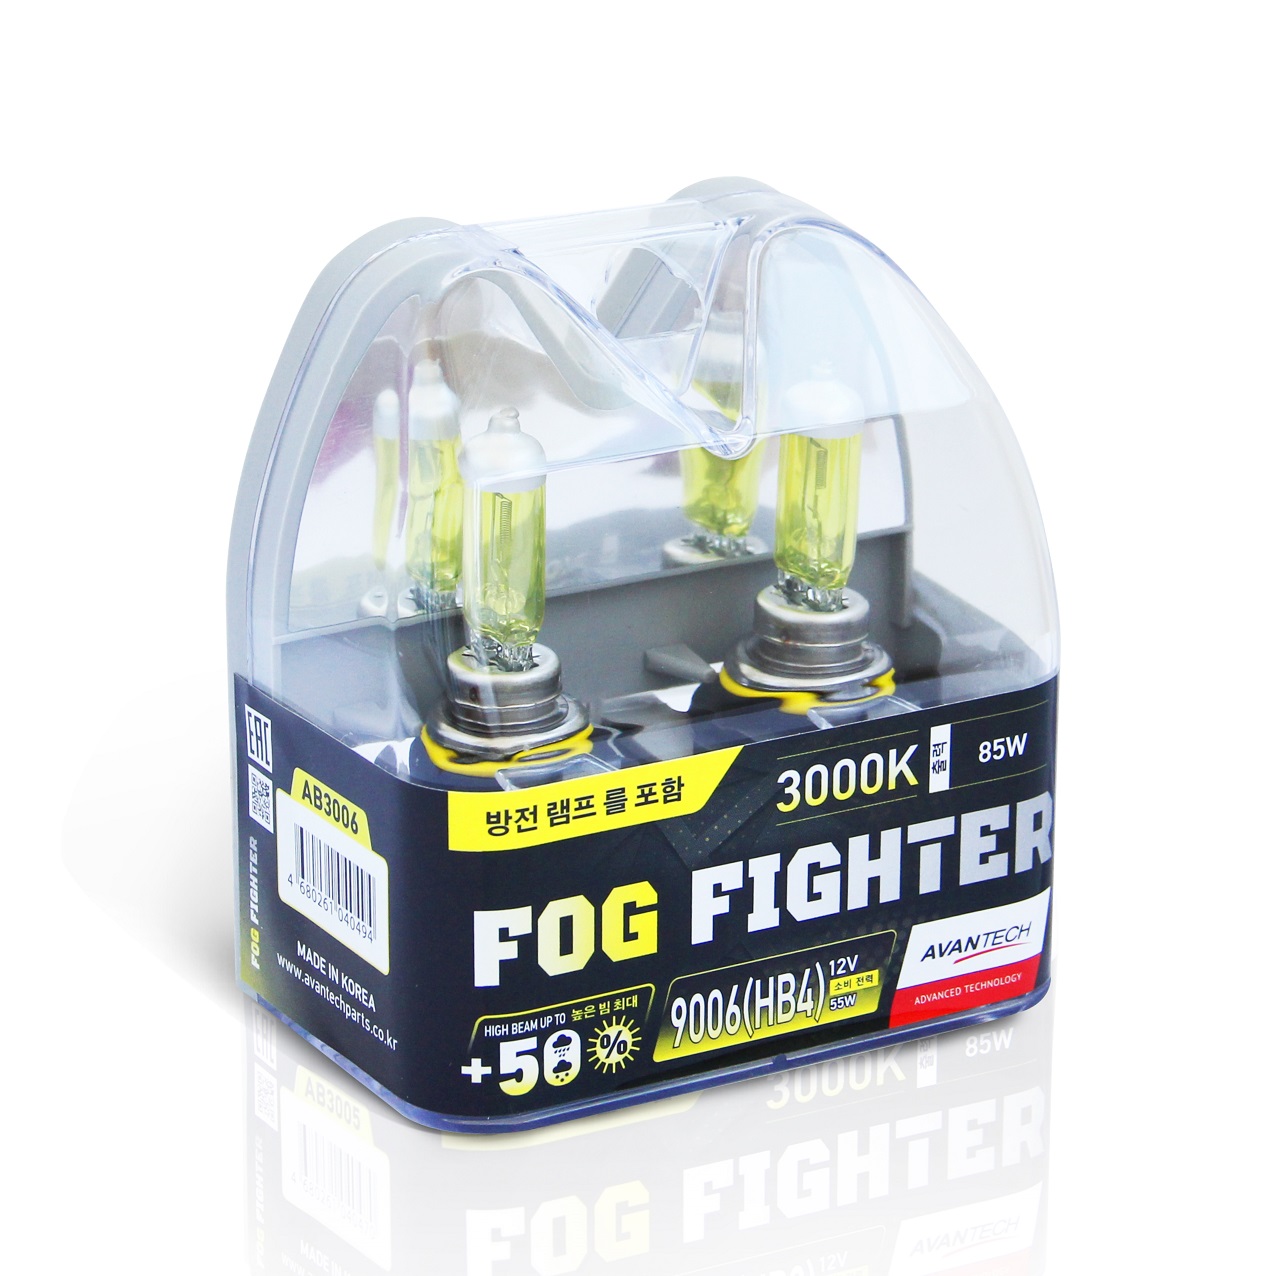 Avantech FOG FIGHTER 9006 (HB4) 12V 55W (85W) 3000K